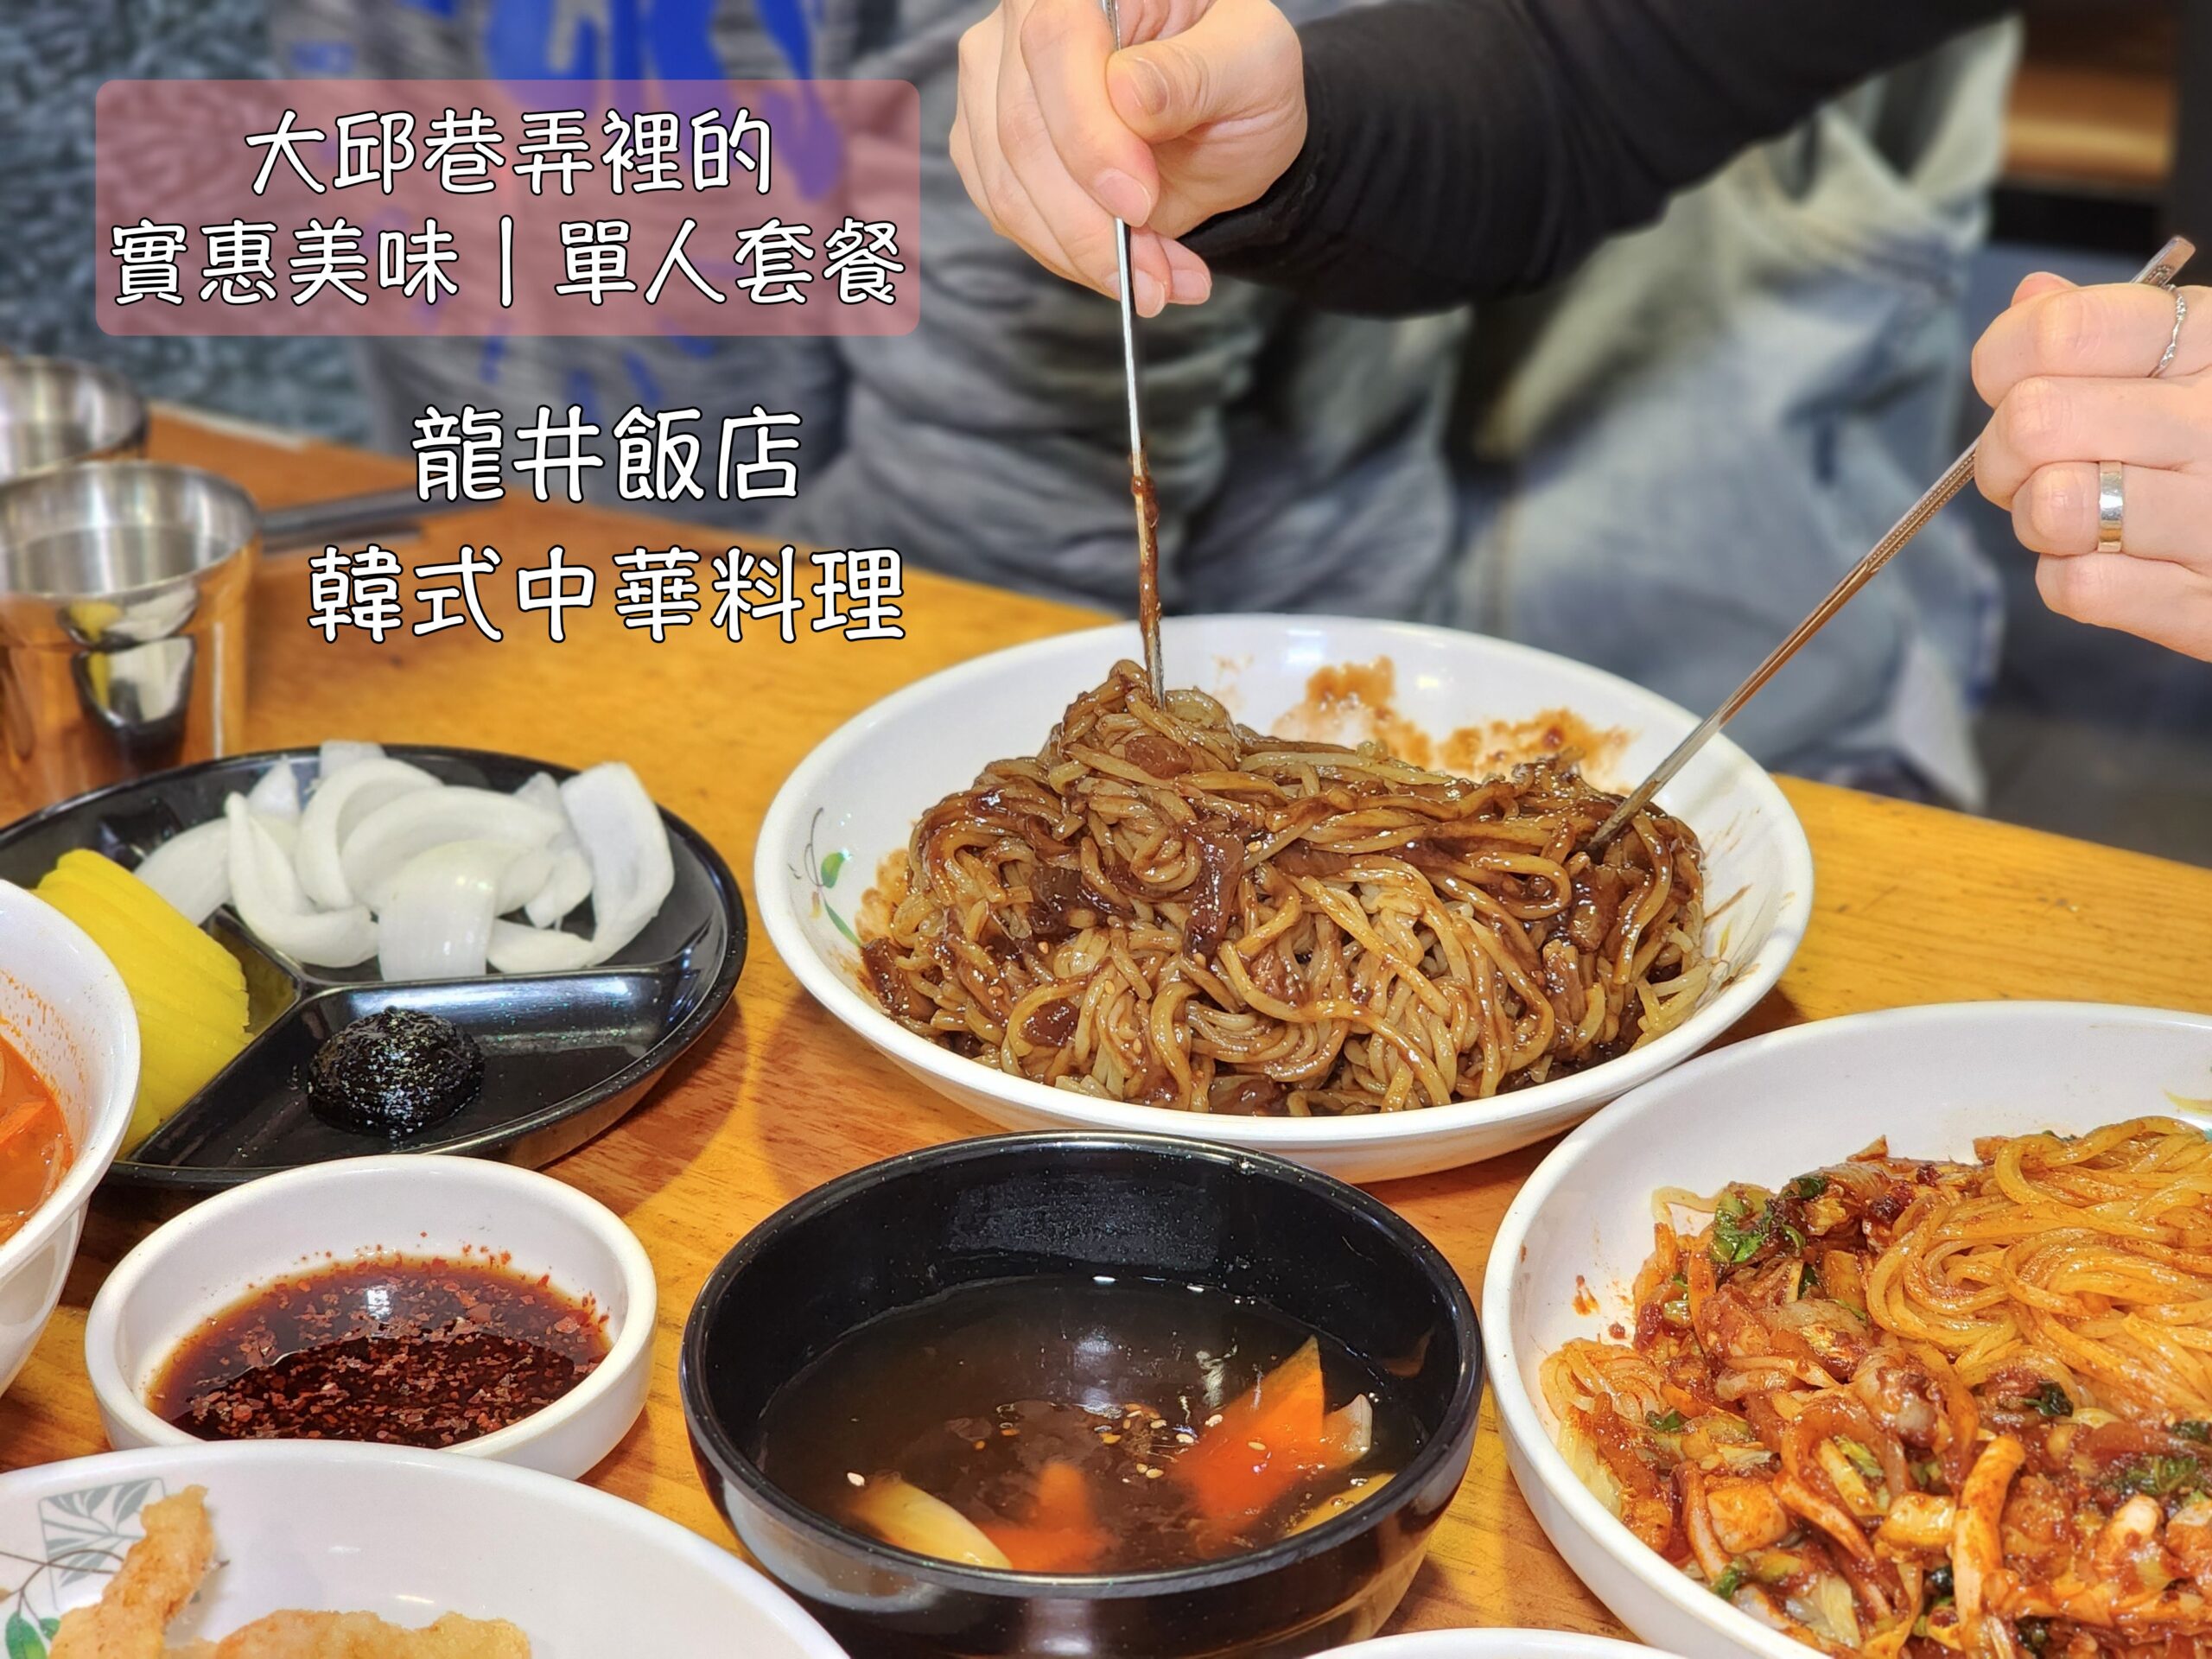 韓國好吃好玩,韓國旅行,韓國綜合 @Helena's Blog